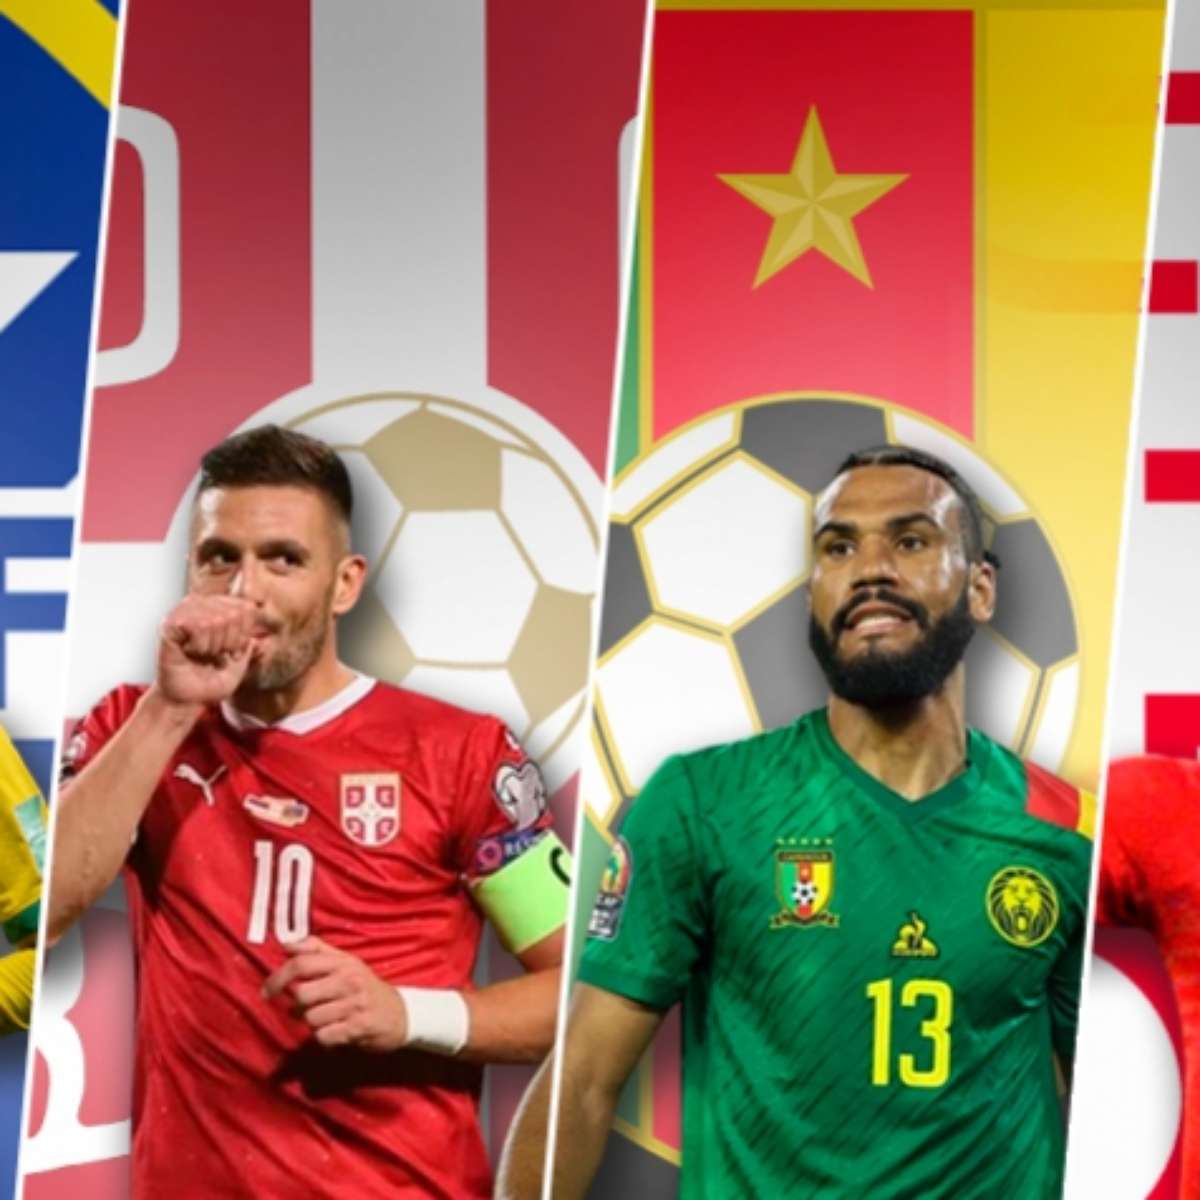 Grupo G da Copa do Mundo 2022: times, jogos, datas e horários